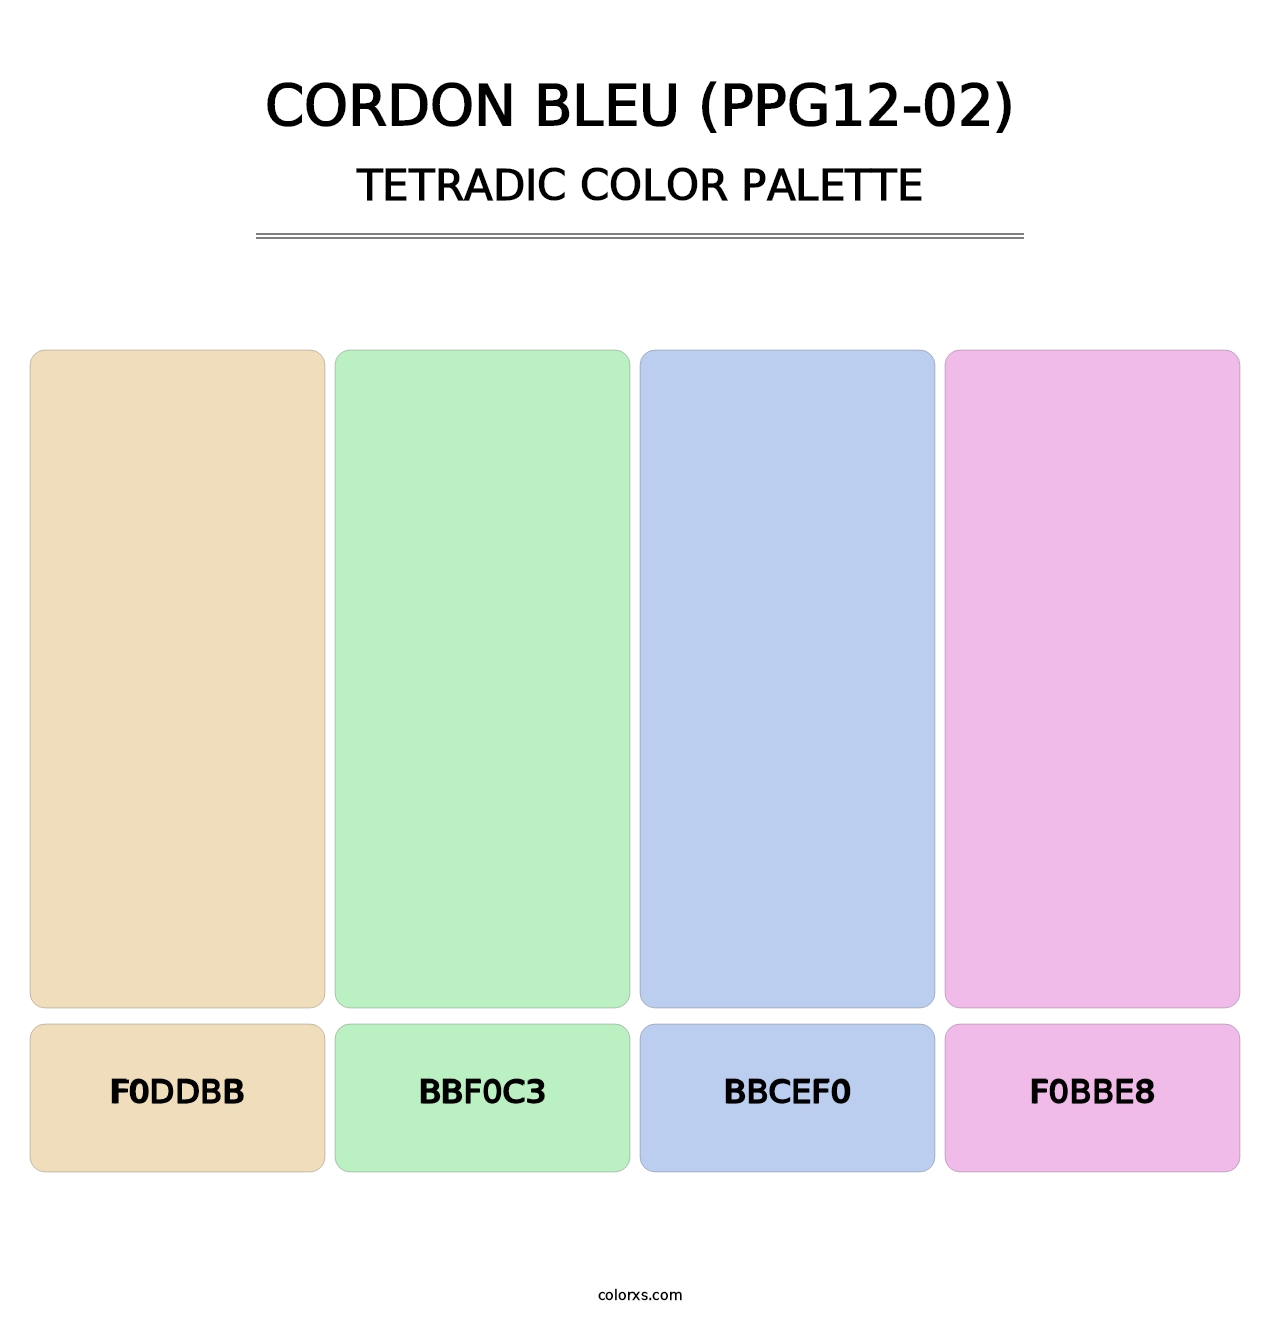 Cordon Bleu (PPG12-02) - Tetradic Color Palette